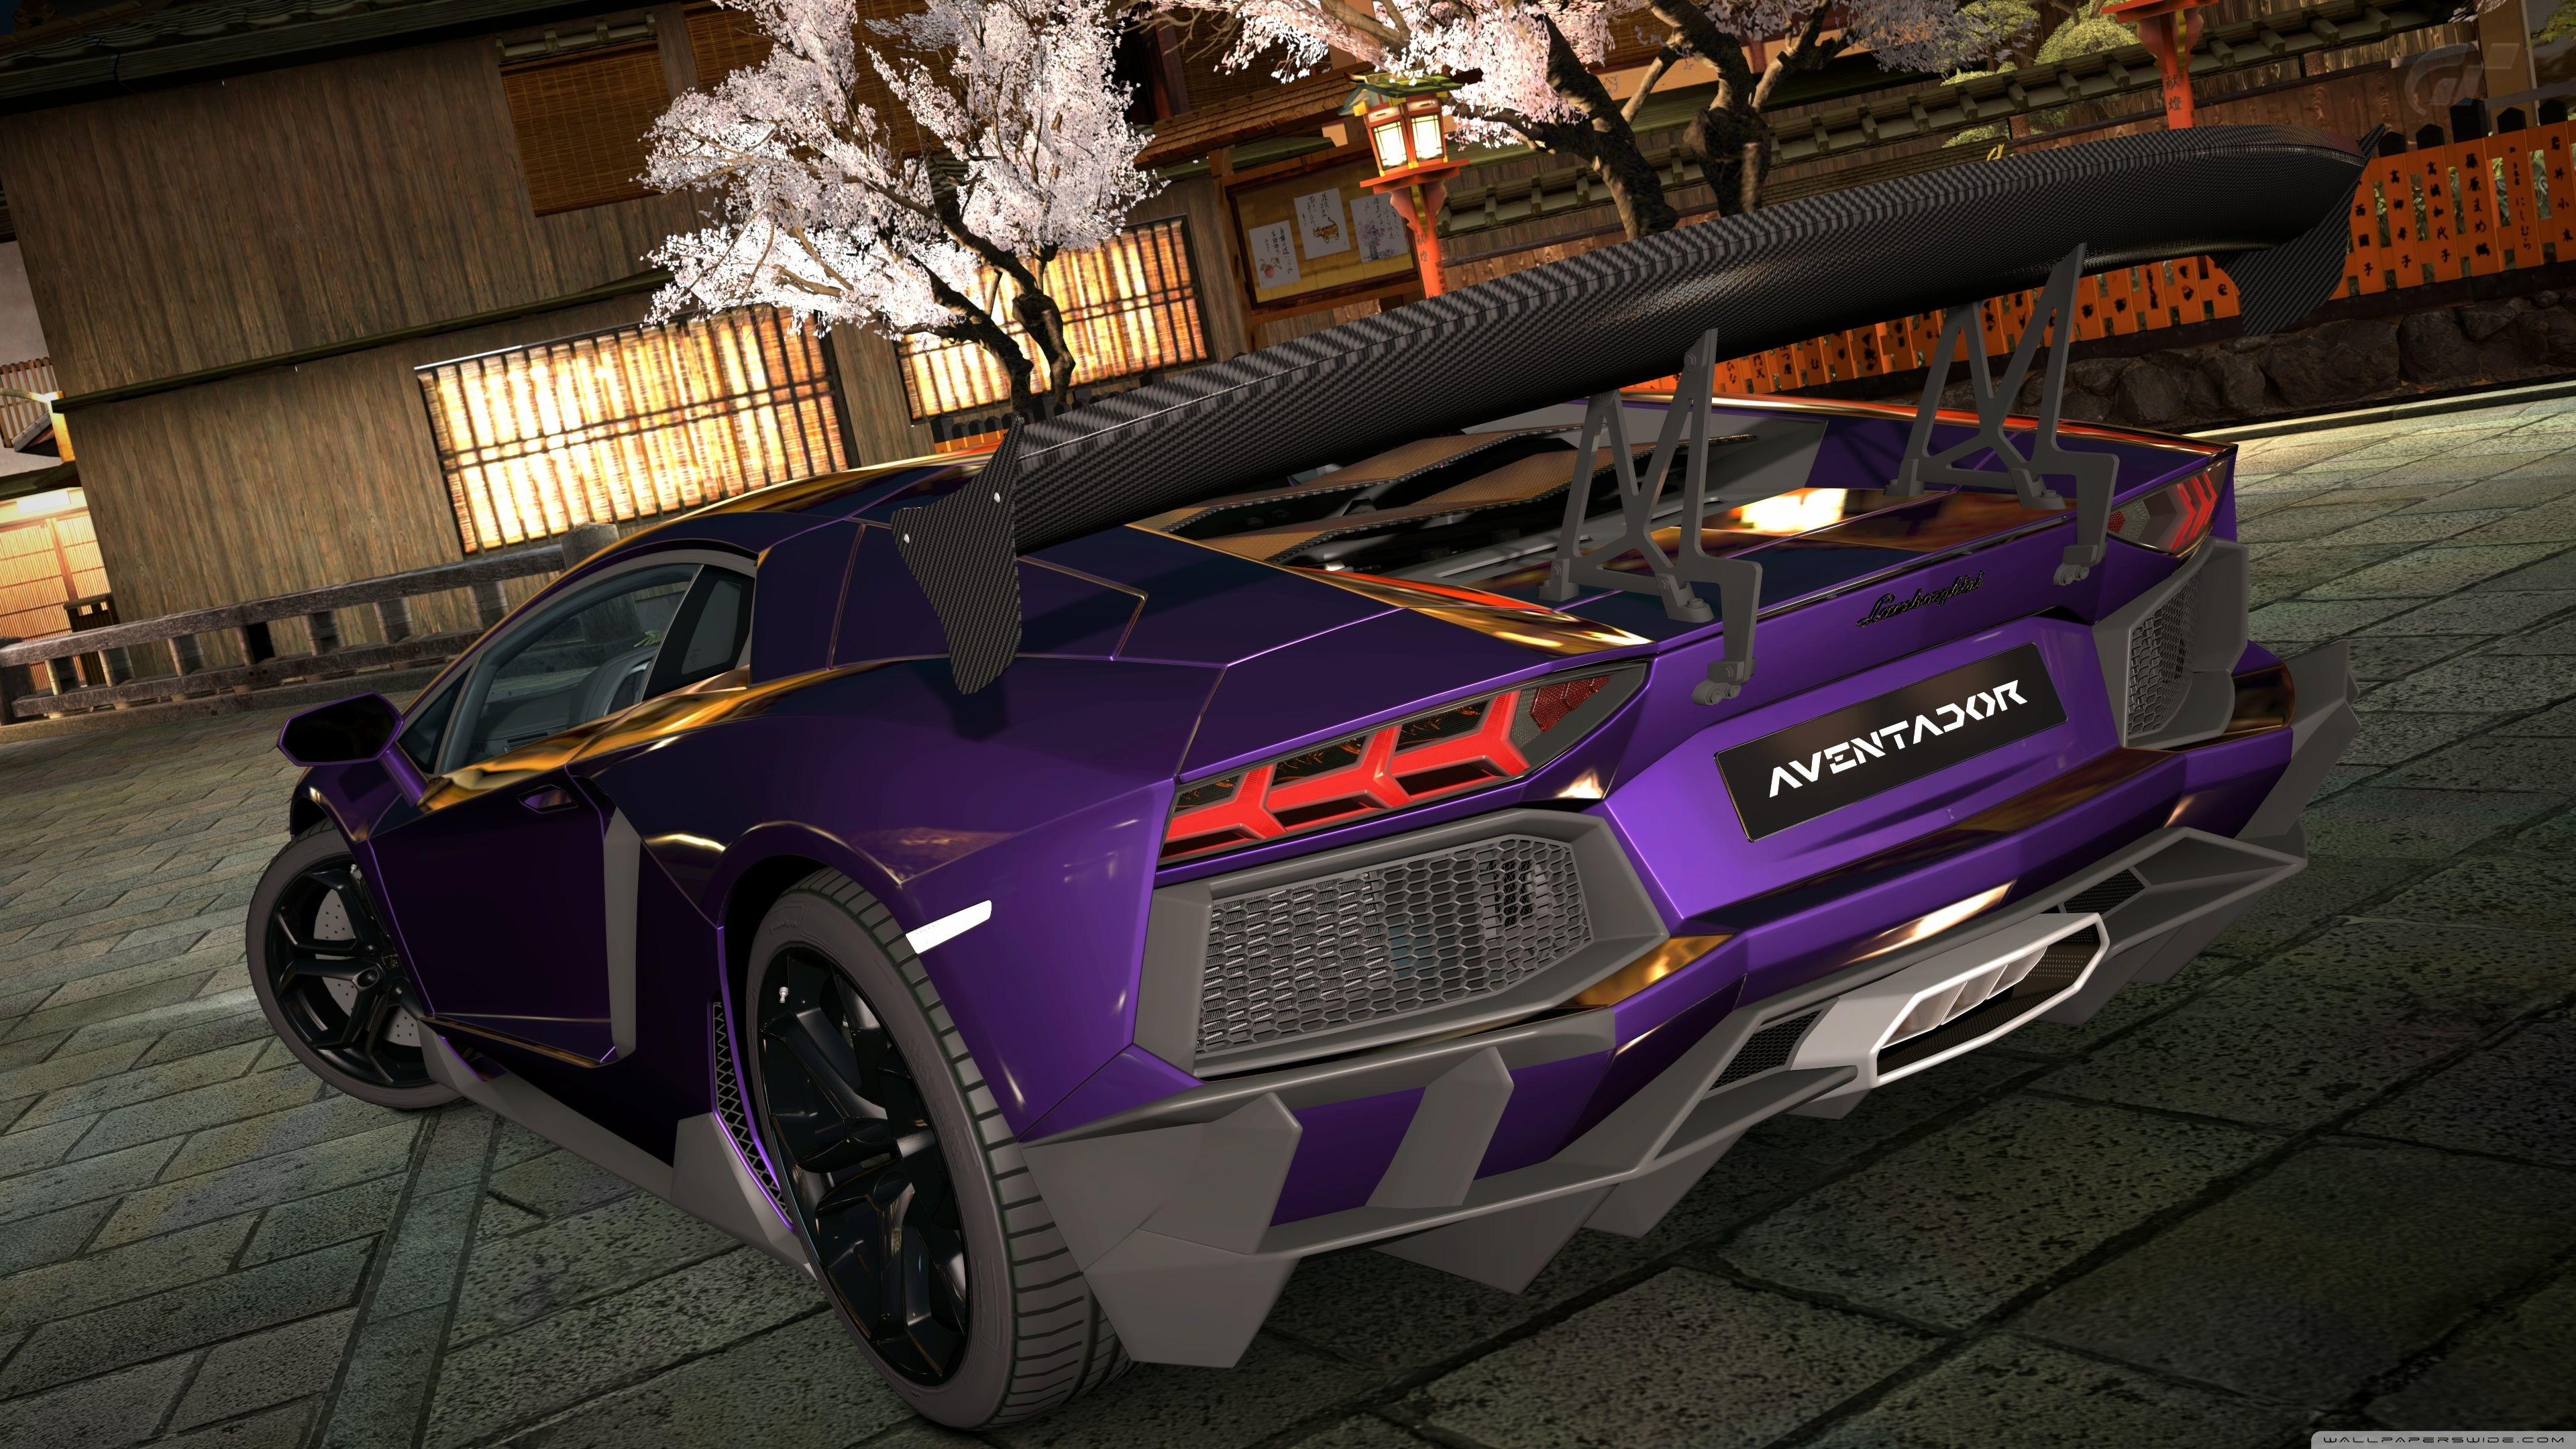 Purple Lamborghini Wallpapers - Top Free Purple Lamborghini Backgrounds ...